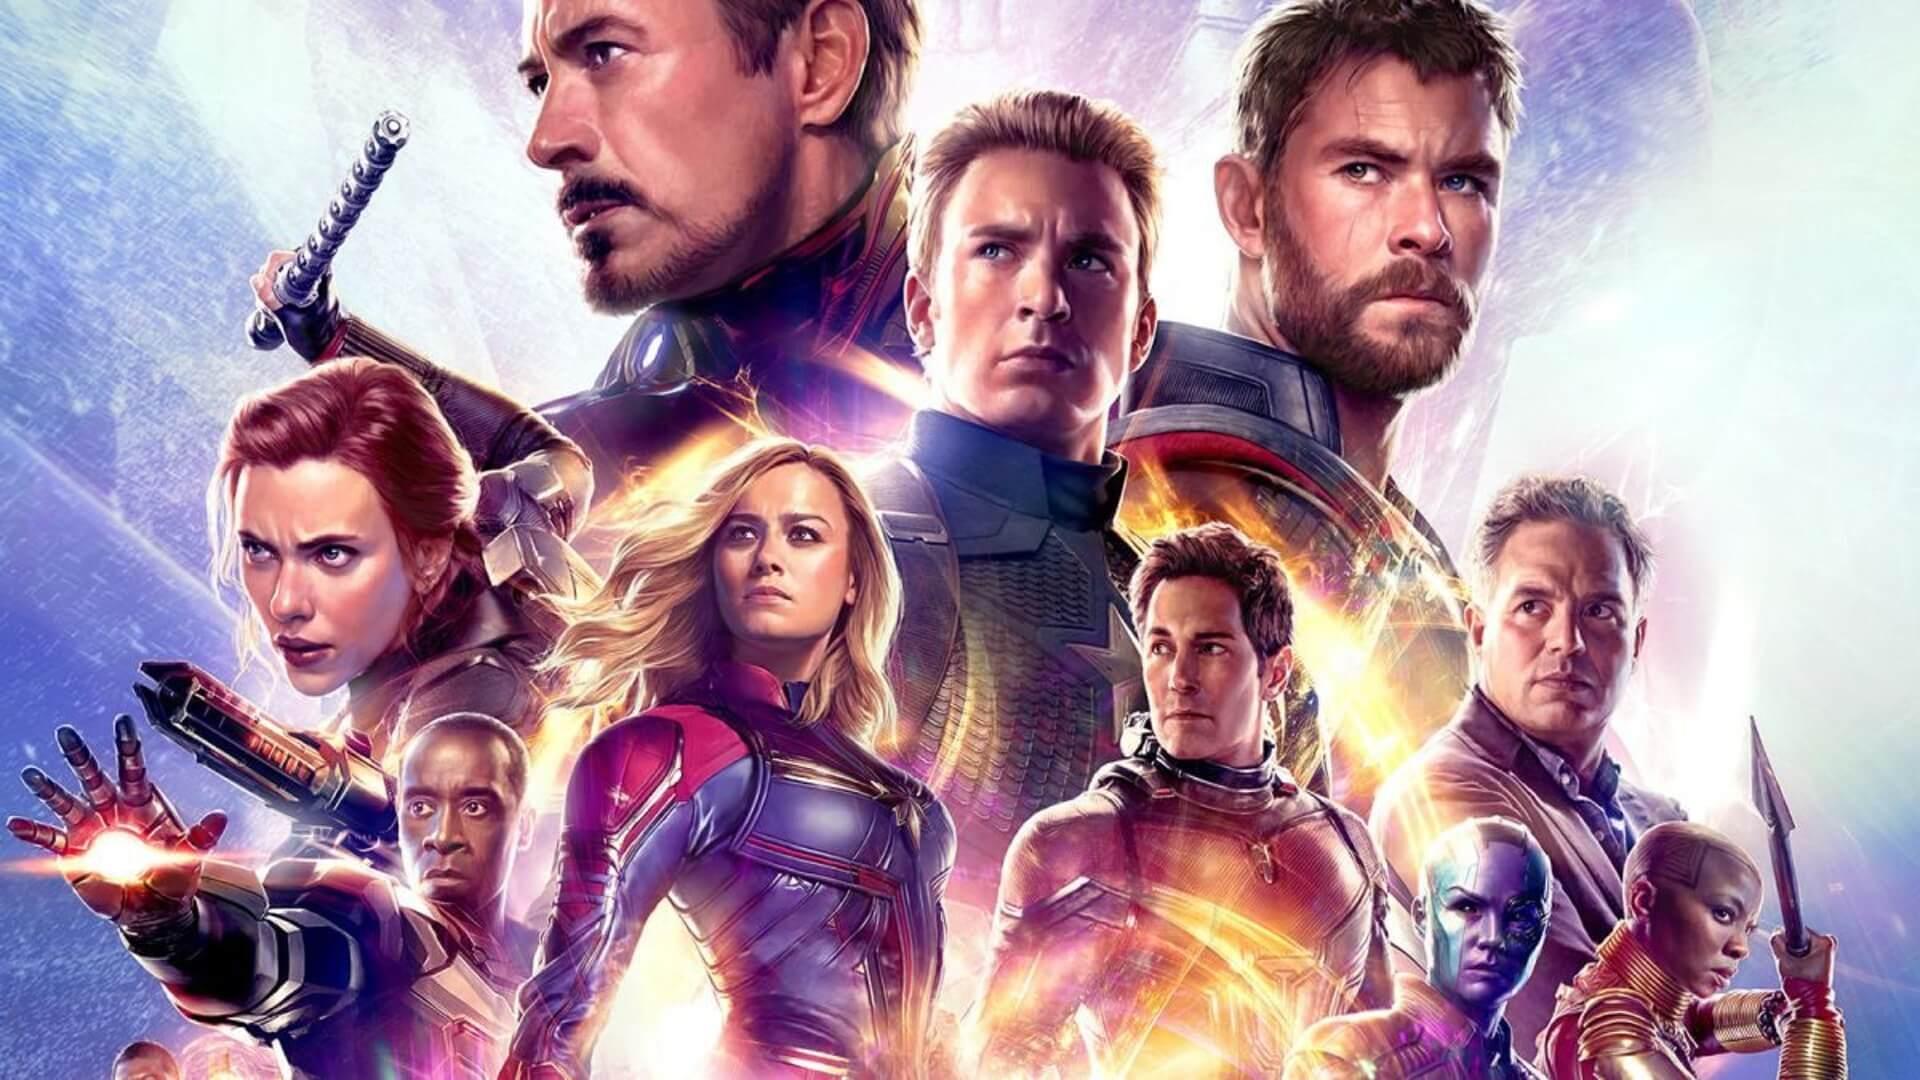 مشاهدة فيلم Avengers: Endgame (2019) مترجم